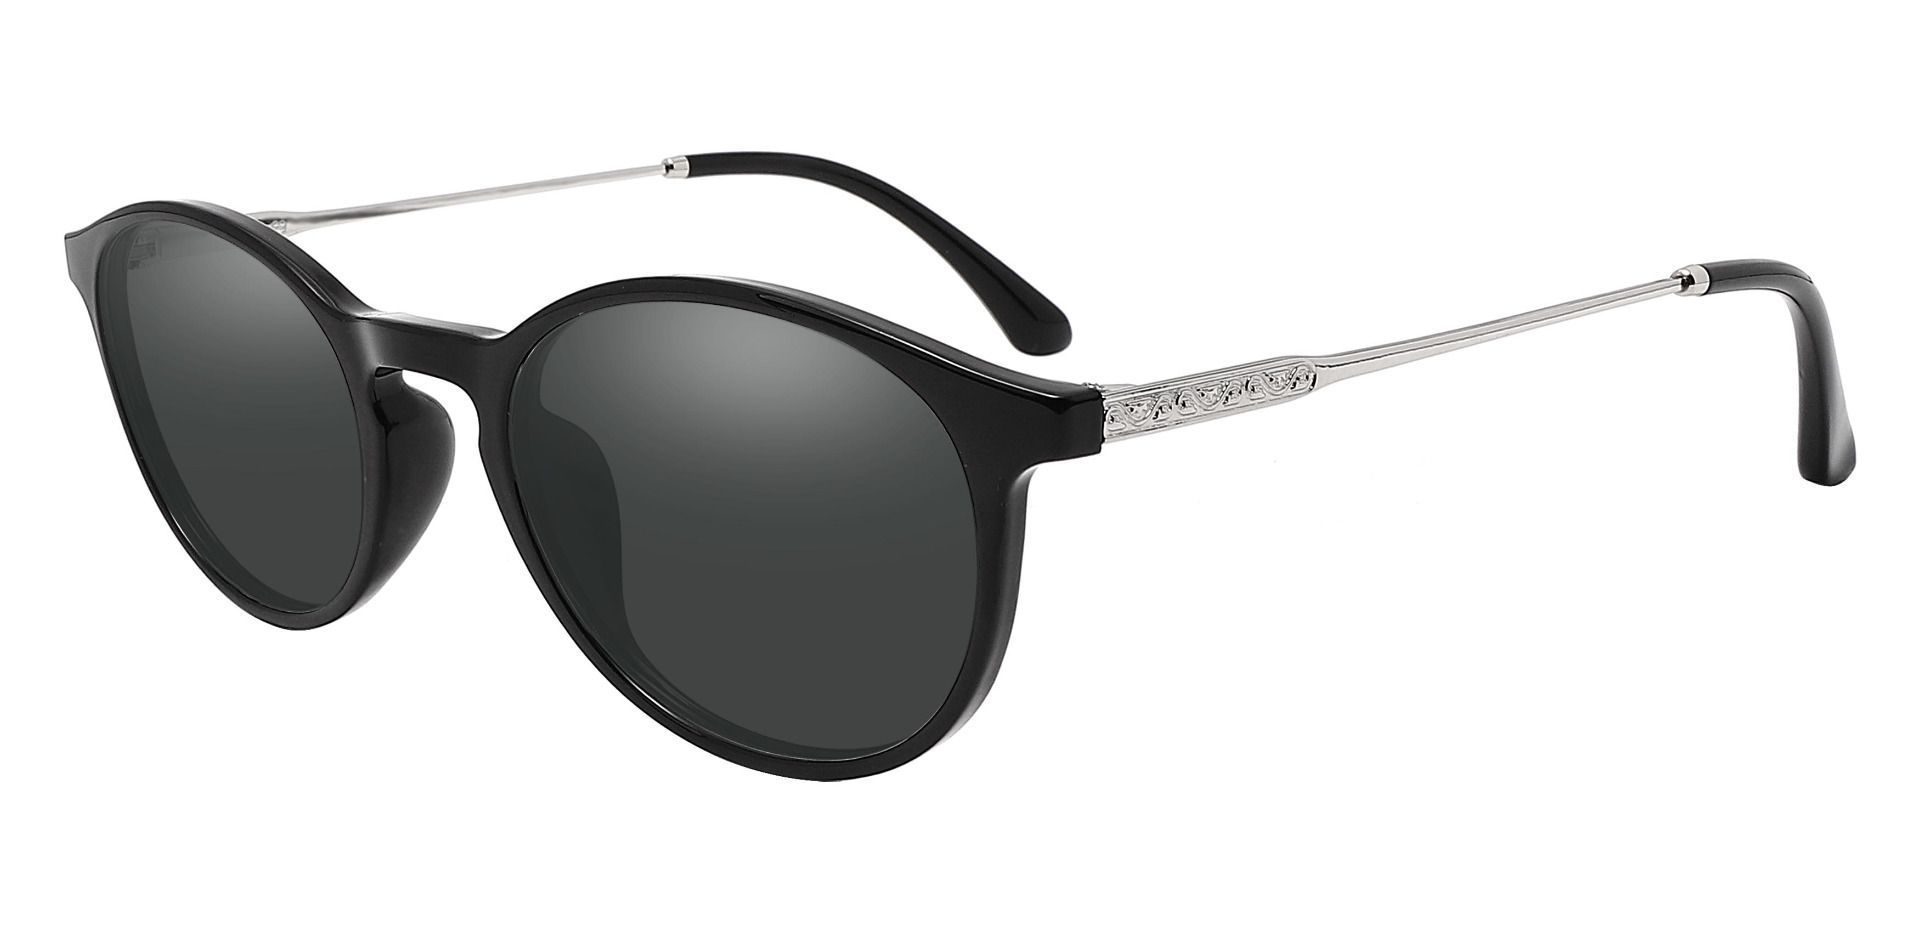 Felton Oval Prescription Sunglasses - Black Frame With Gray Lenses